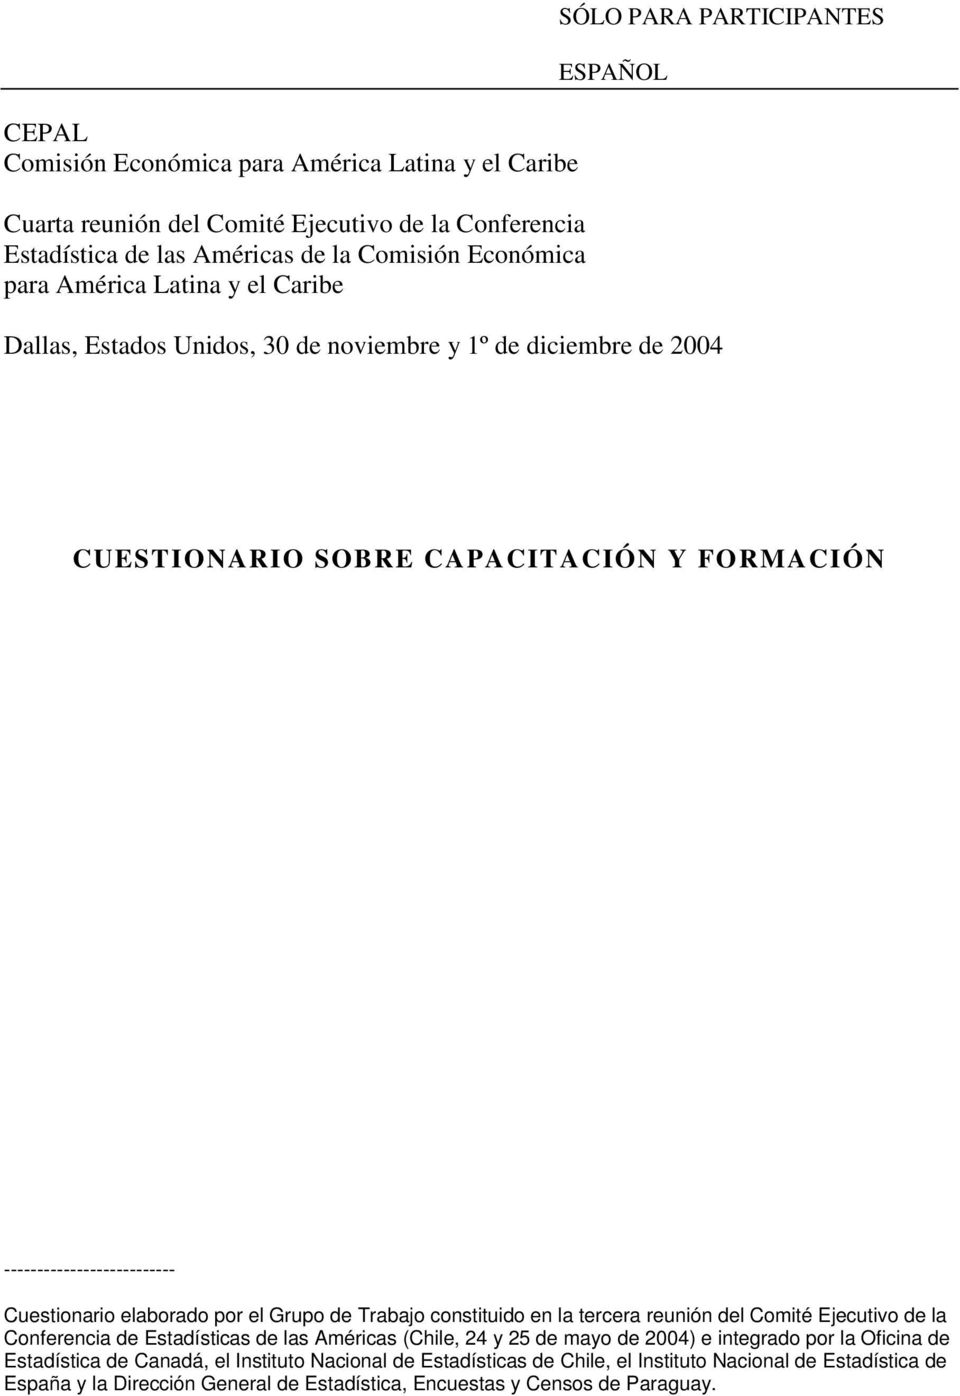 elaborado por el Grupo de Trabajo constituido en la tercera reunión del Comité Ejecutivo de la Conferencia de Estadísticas de las Américas (Chile, 24 y 25 de mayo de 2004) e integrado por la